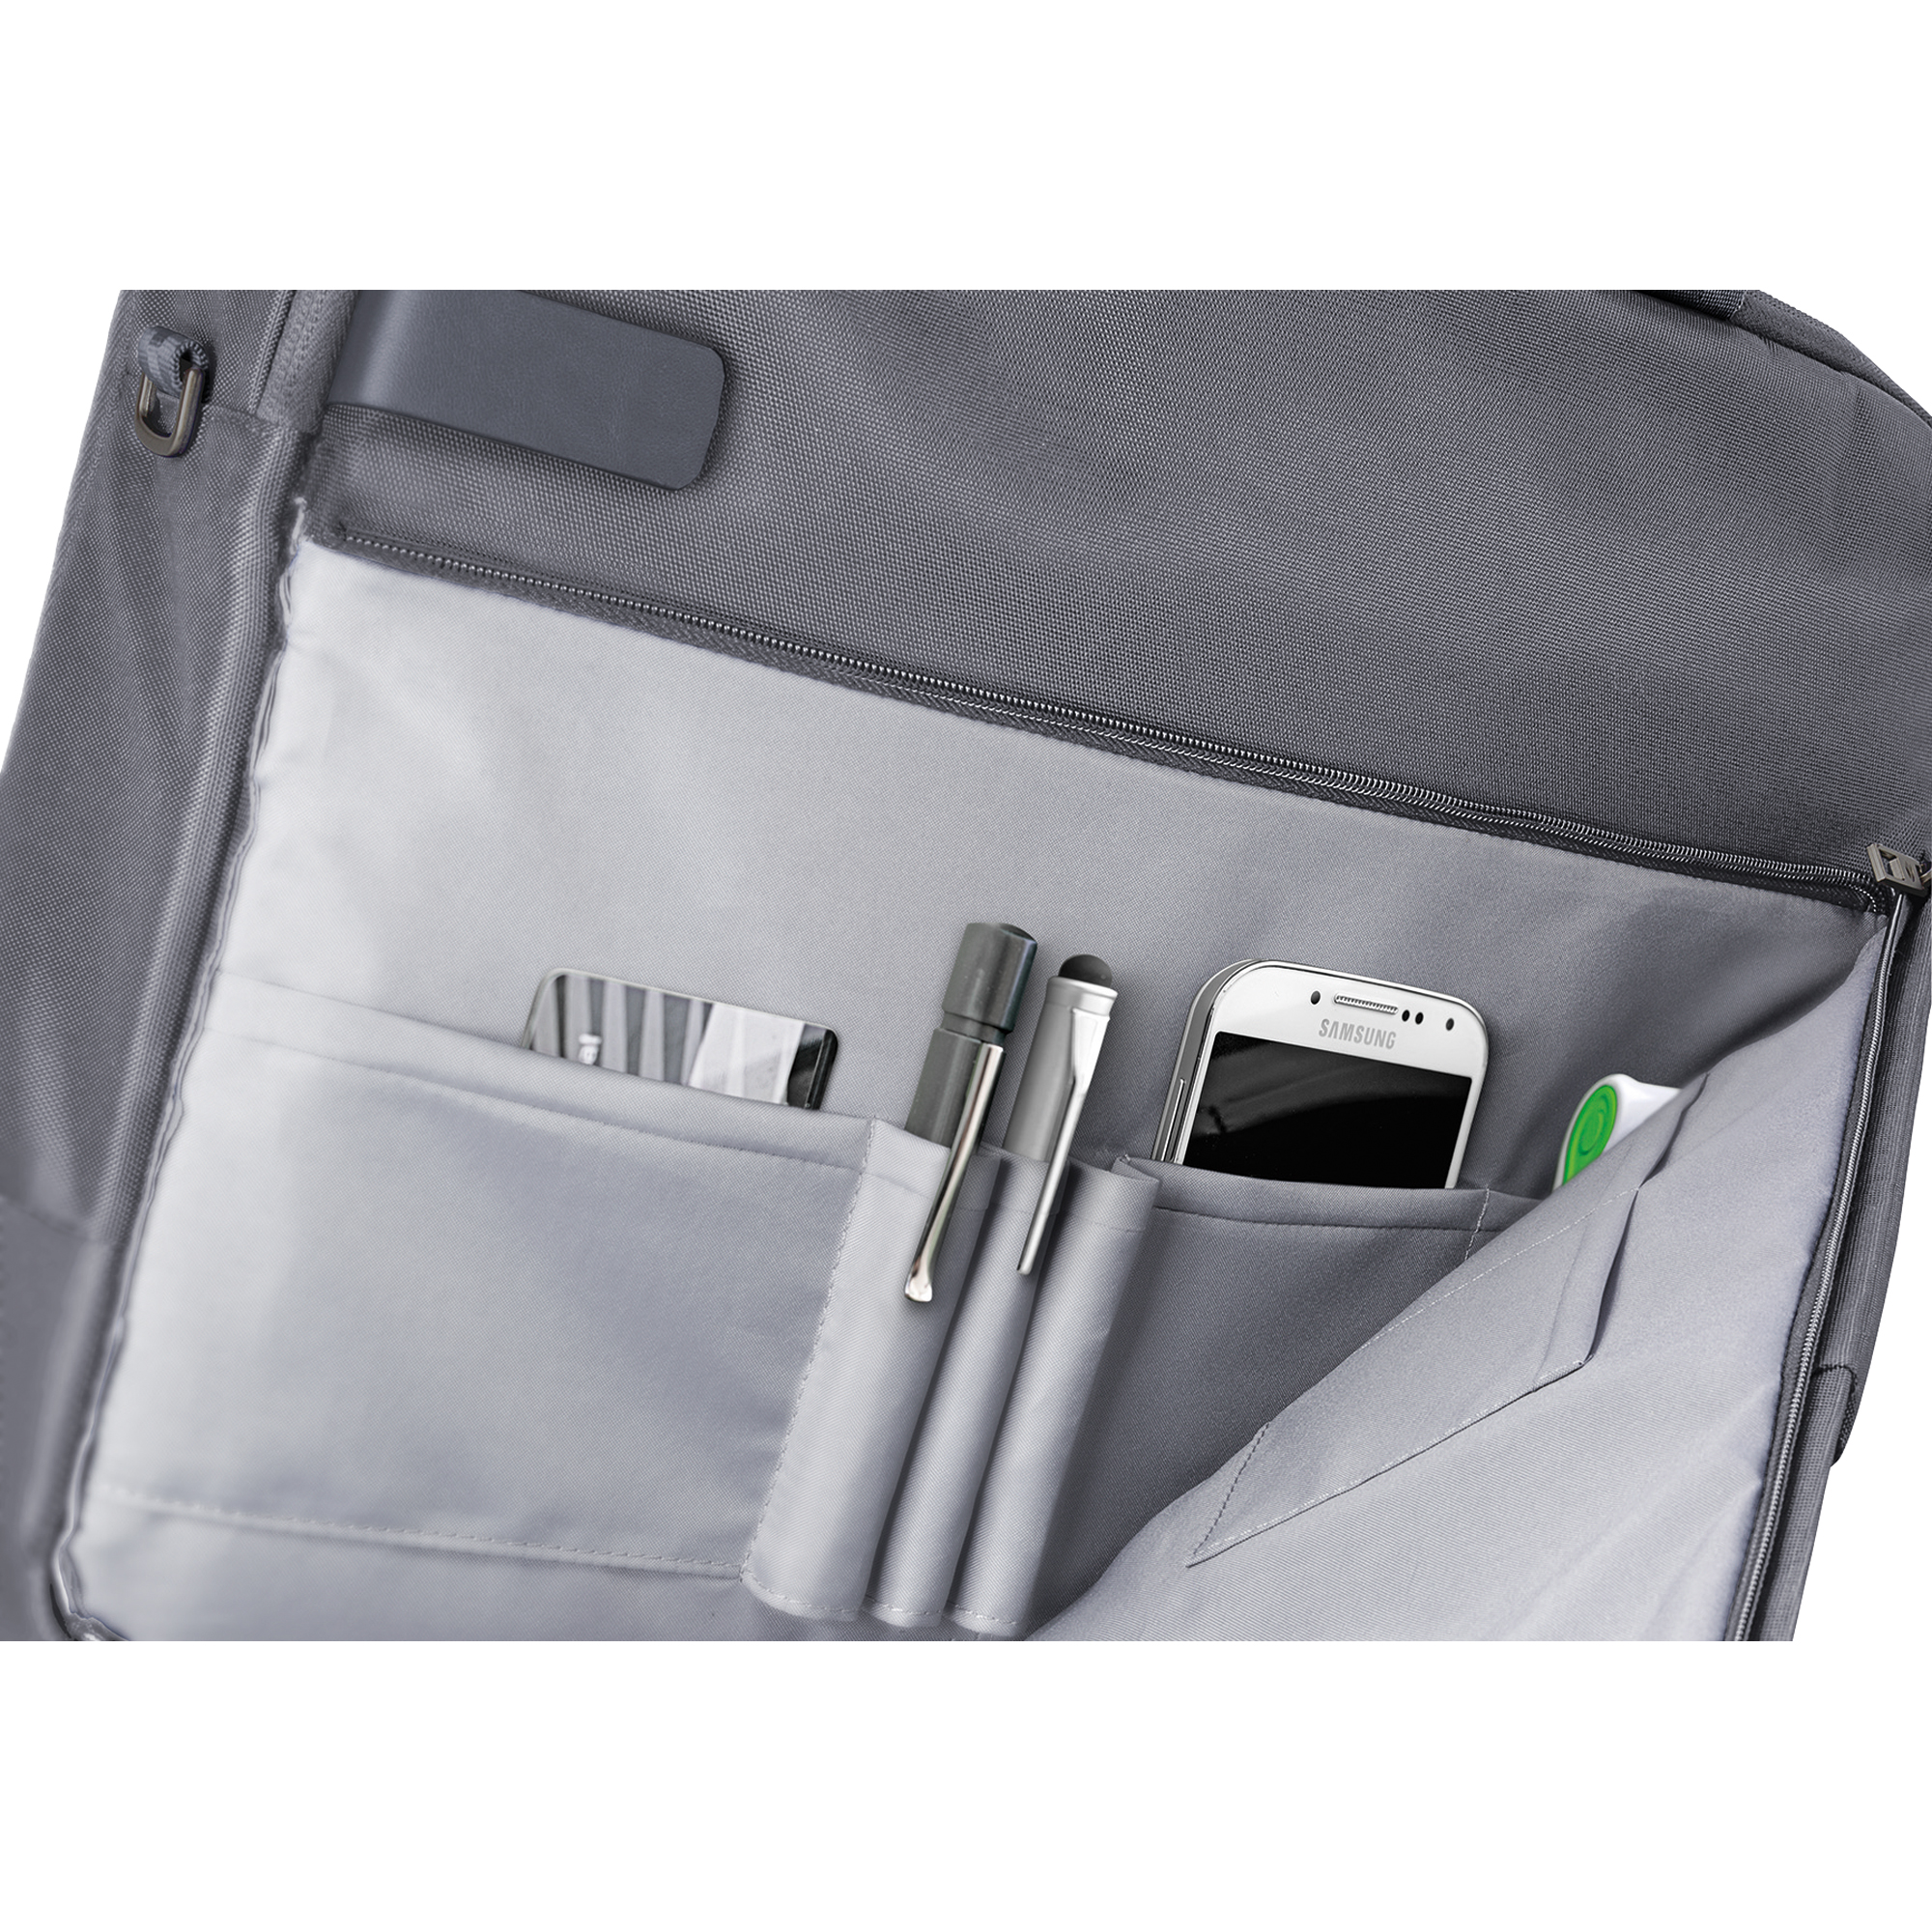 Leitz Notebooktasche Complete Smart Traveller 38 x 29 x 16 cm silber grau